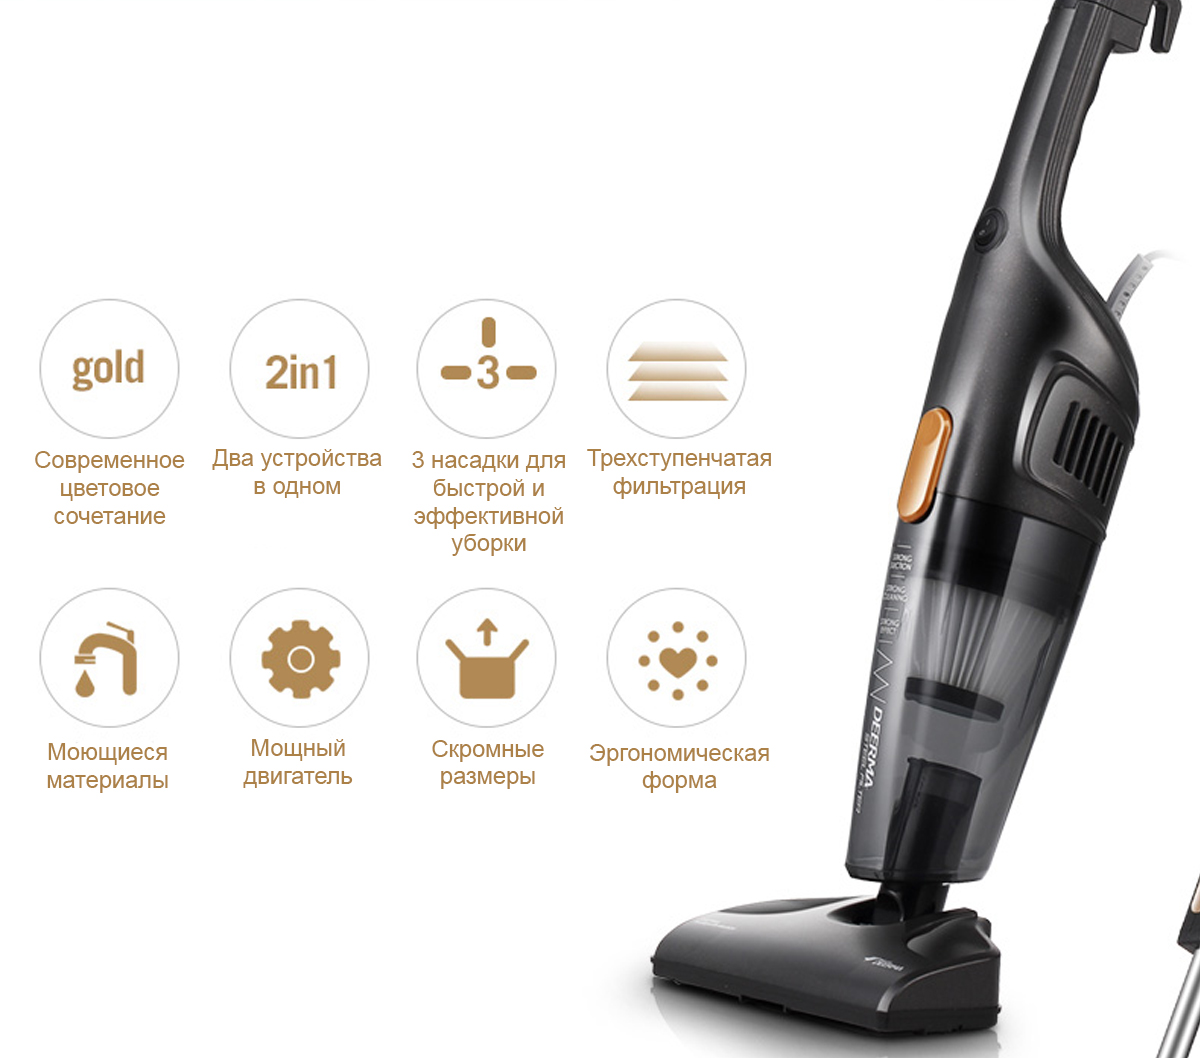 Ручной пылесос Deerma Handheld Vacuum Cleaner DX115C